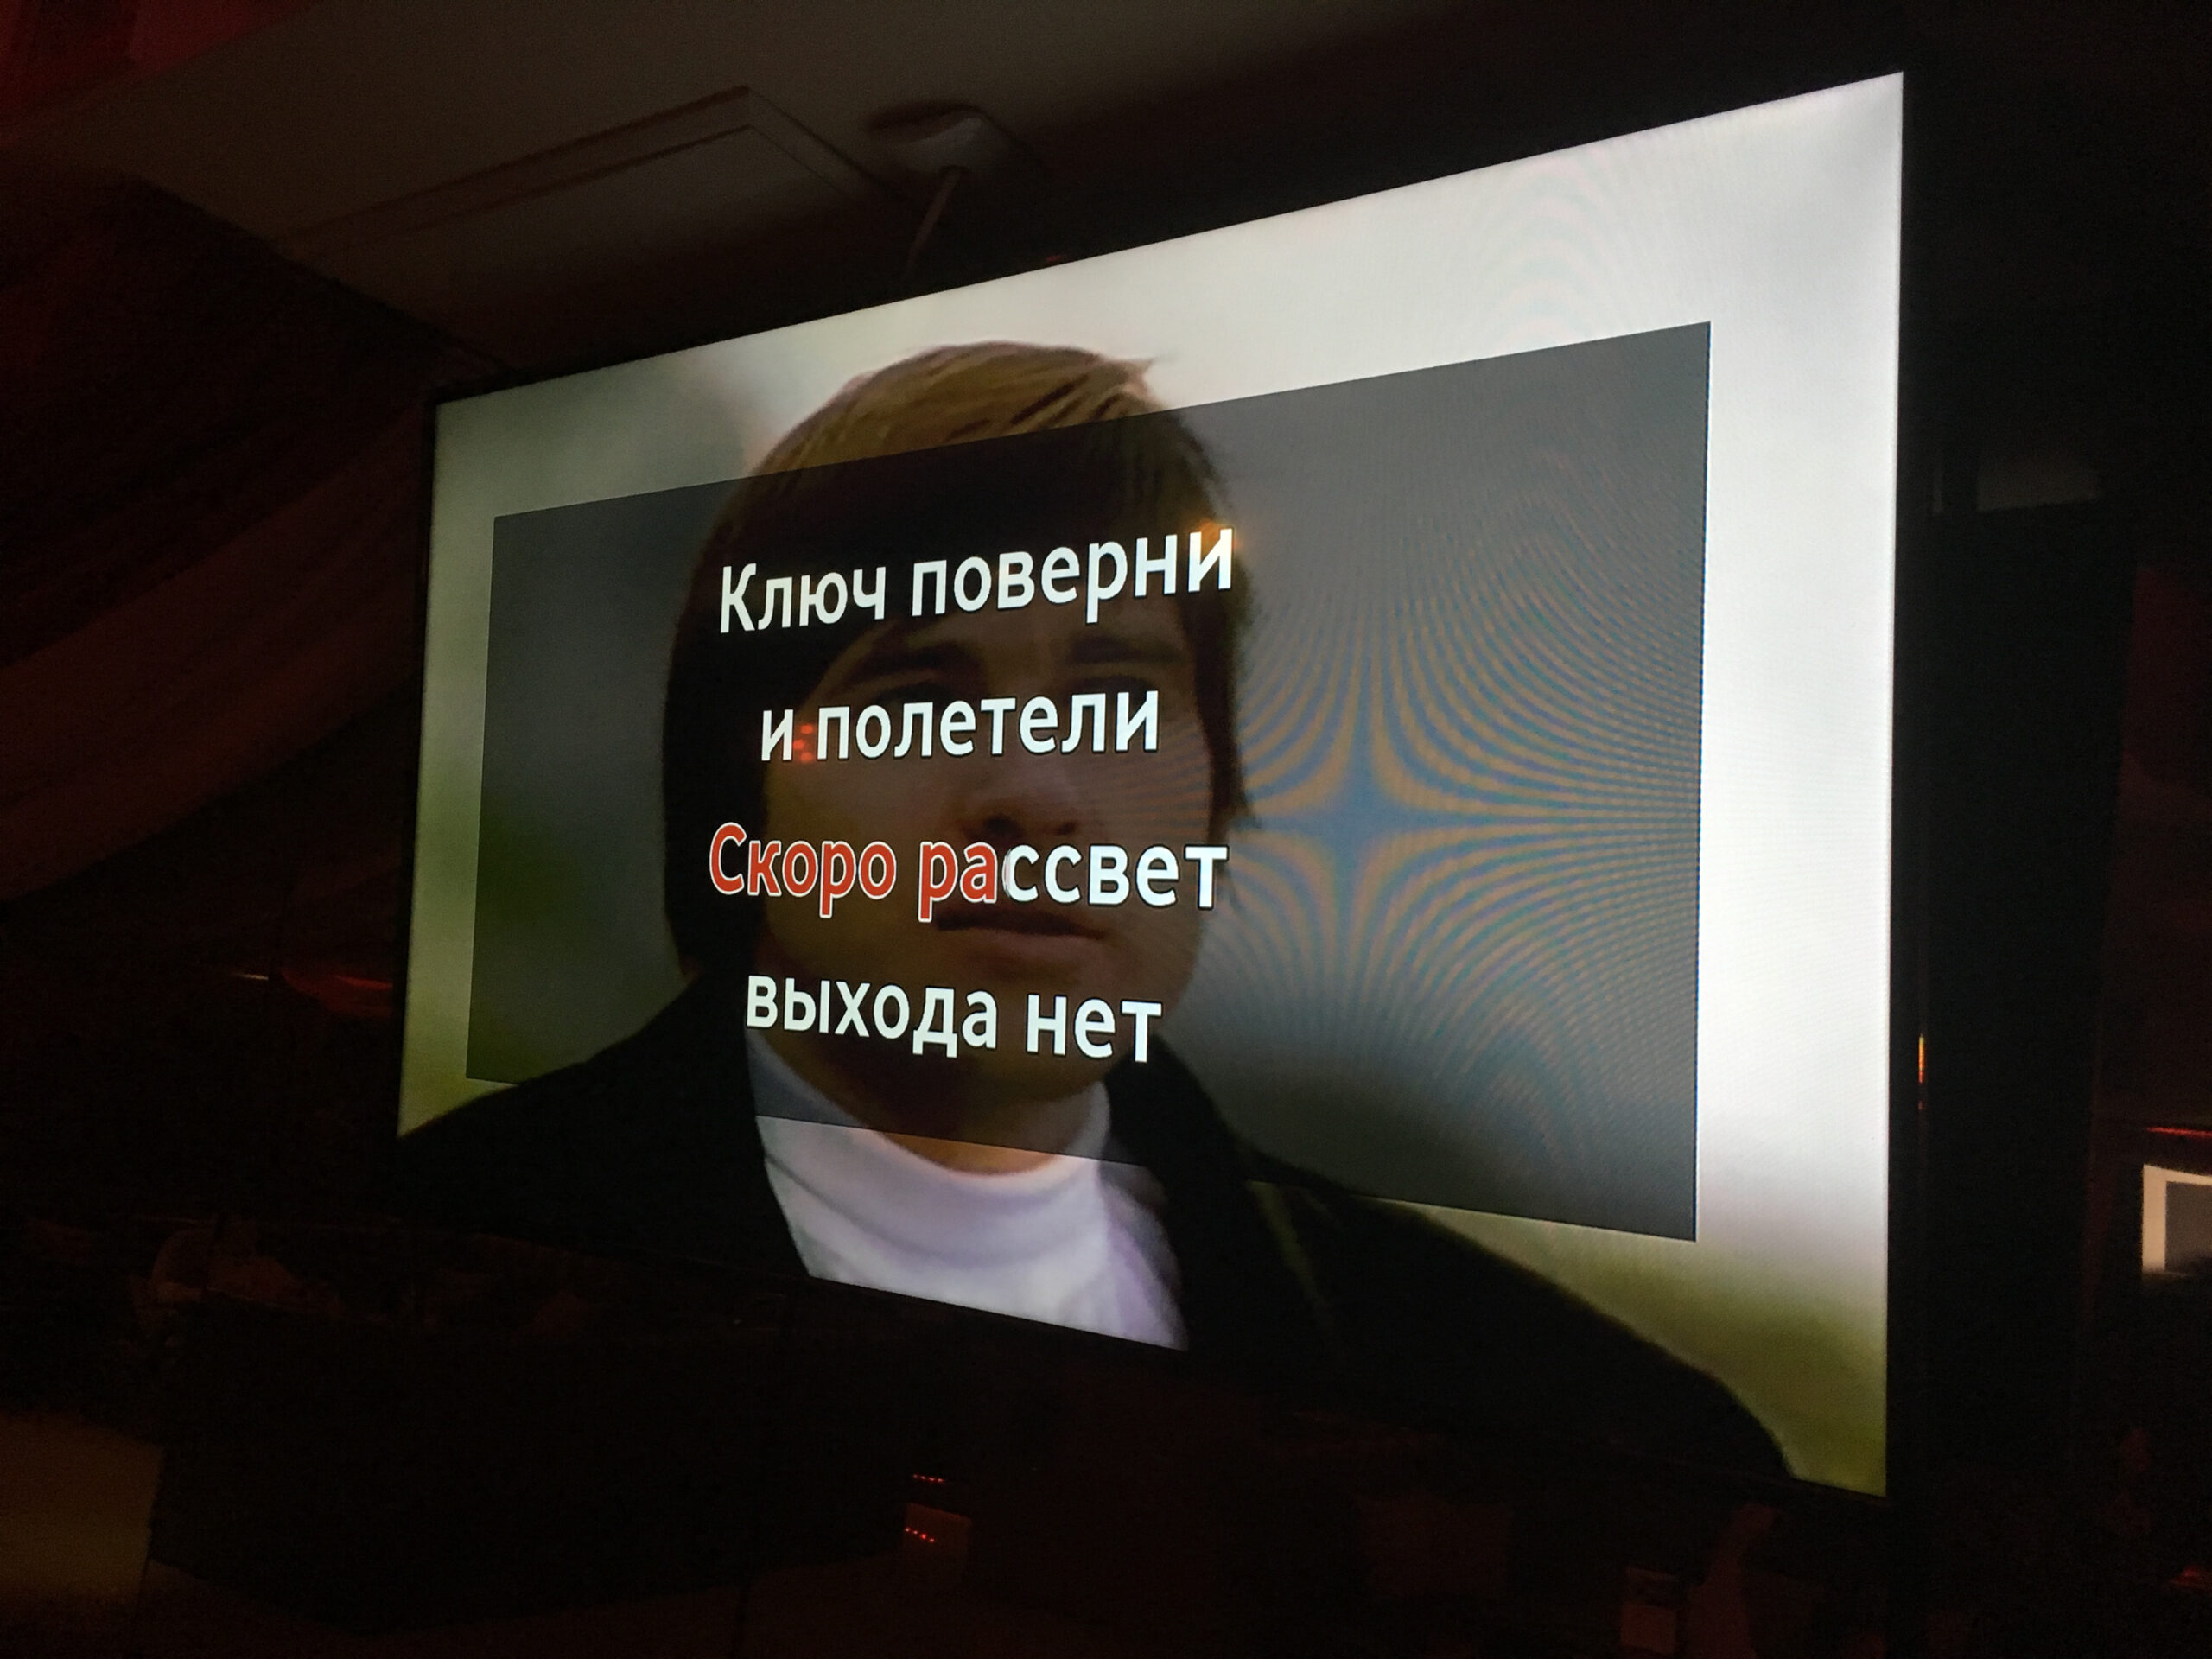 Russian karaoke is easy if you've learned the Russian alphabet.